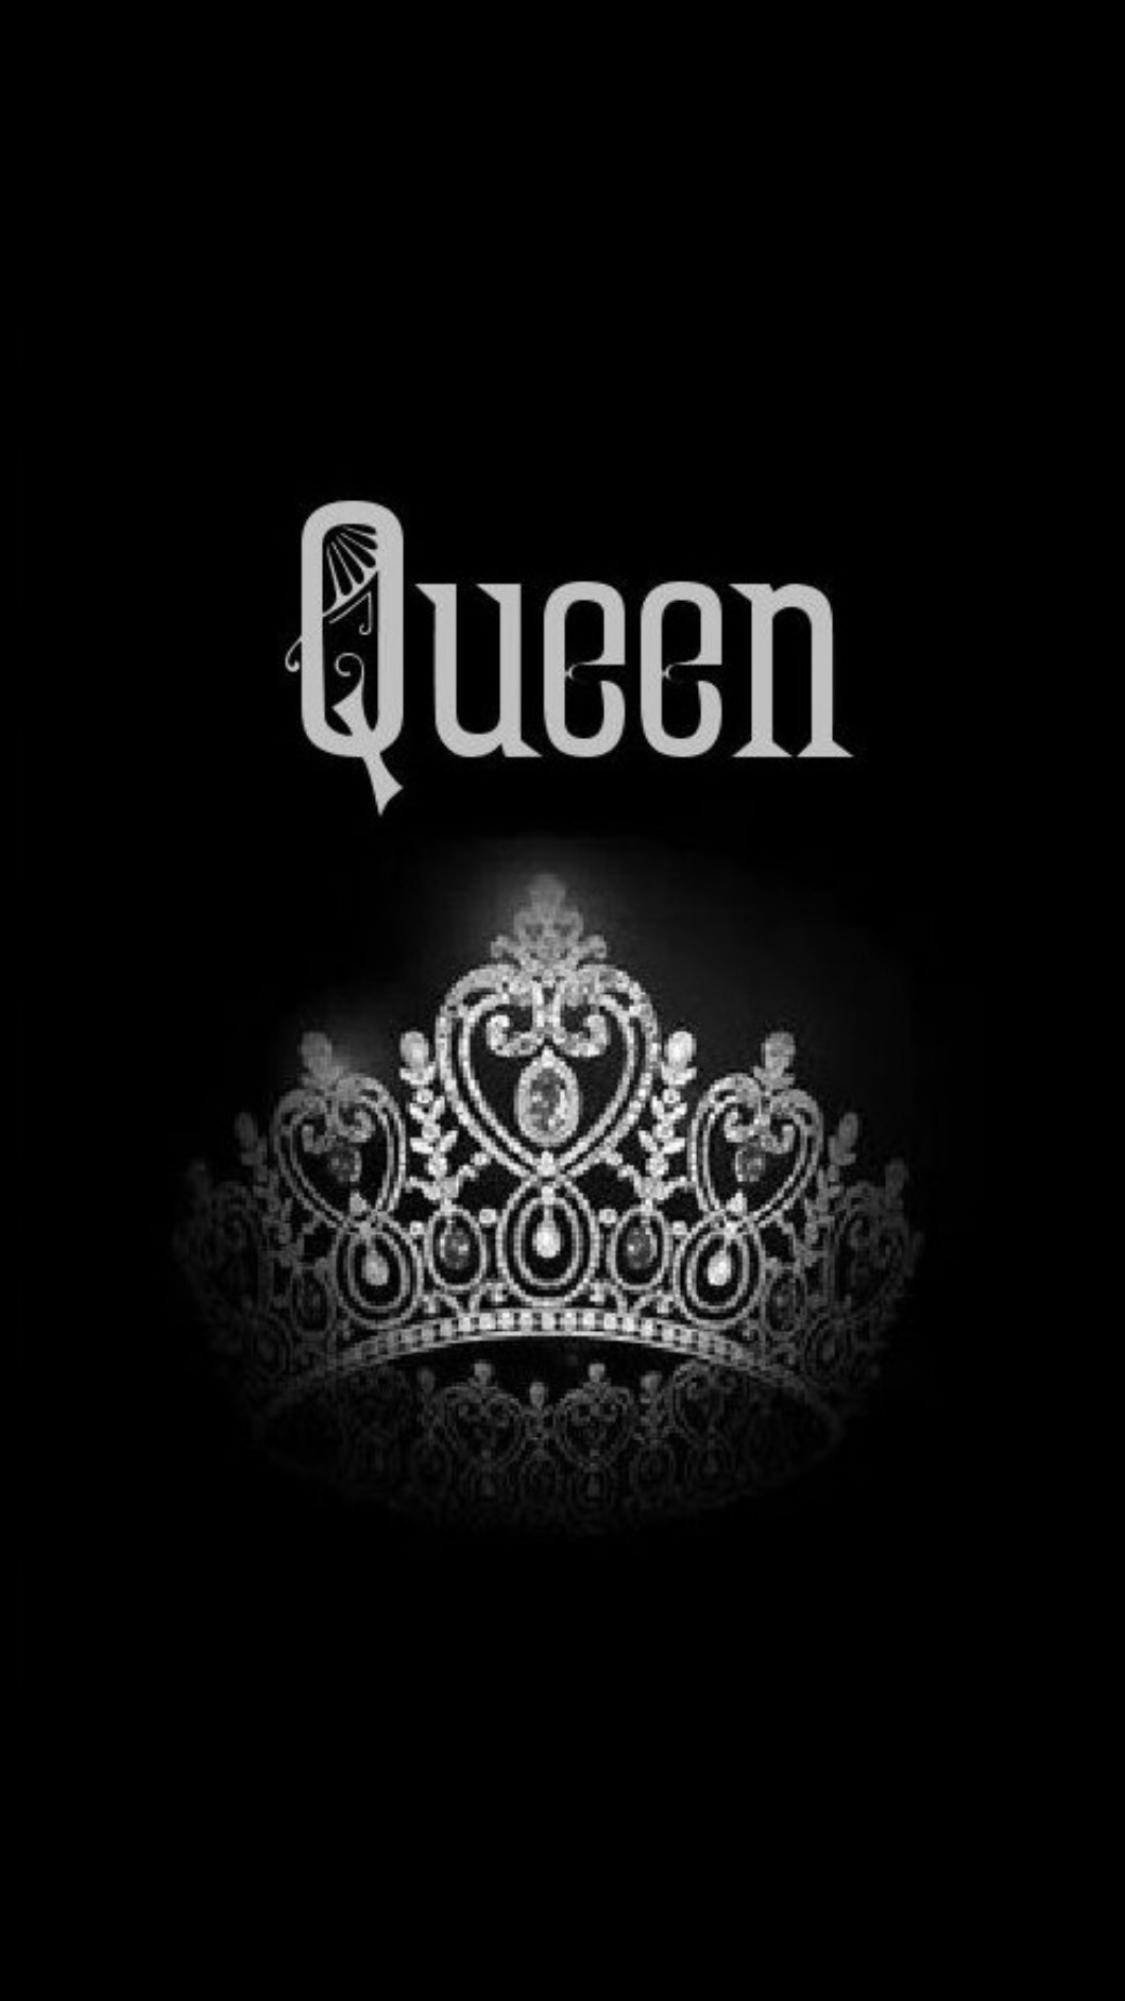 iPhone wallpaper. Queen quotes boss, Queens wallpaper, Queen quotes